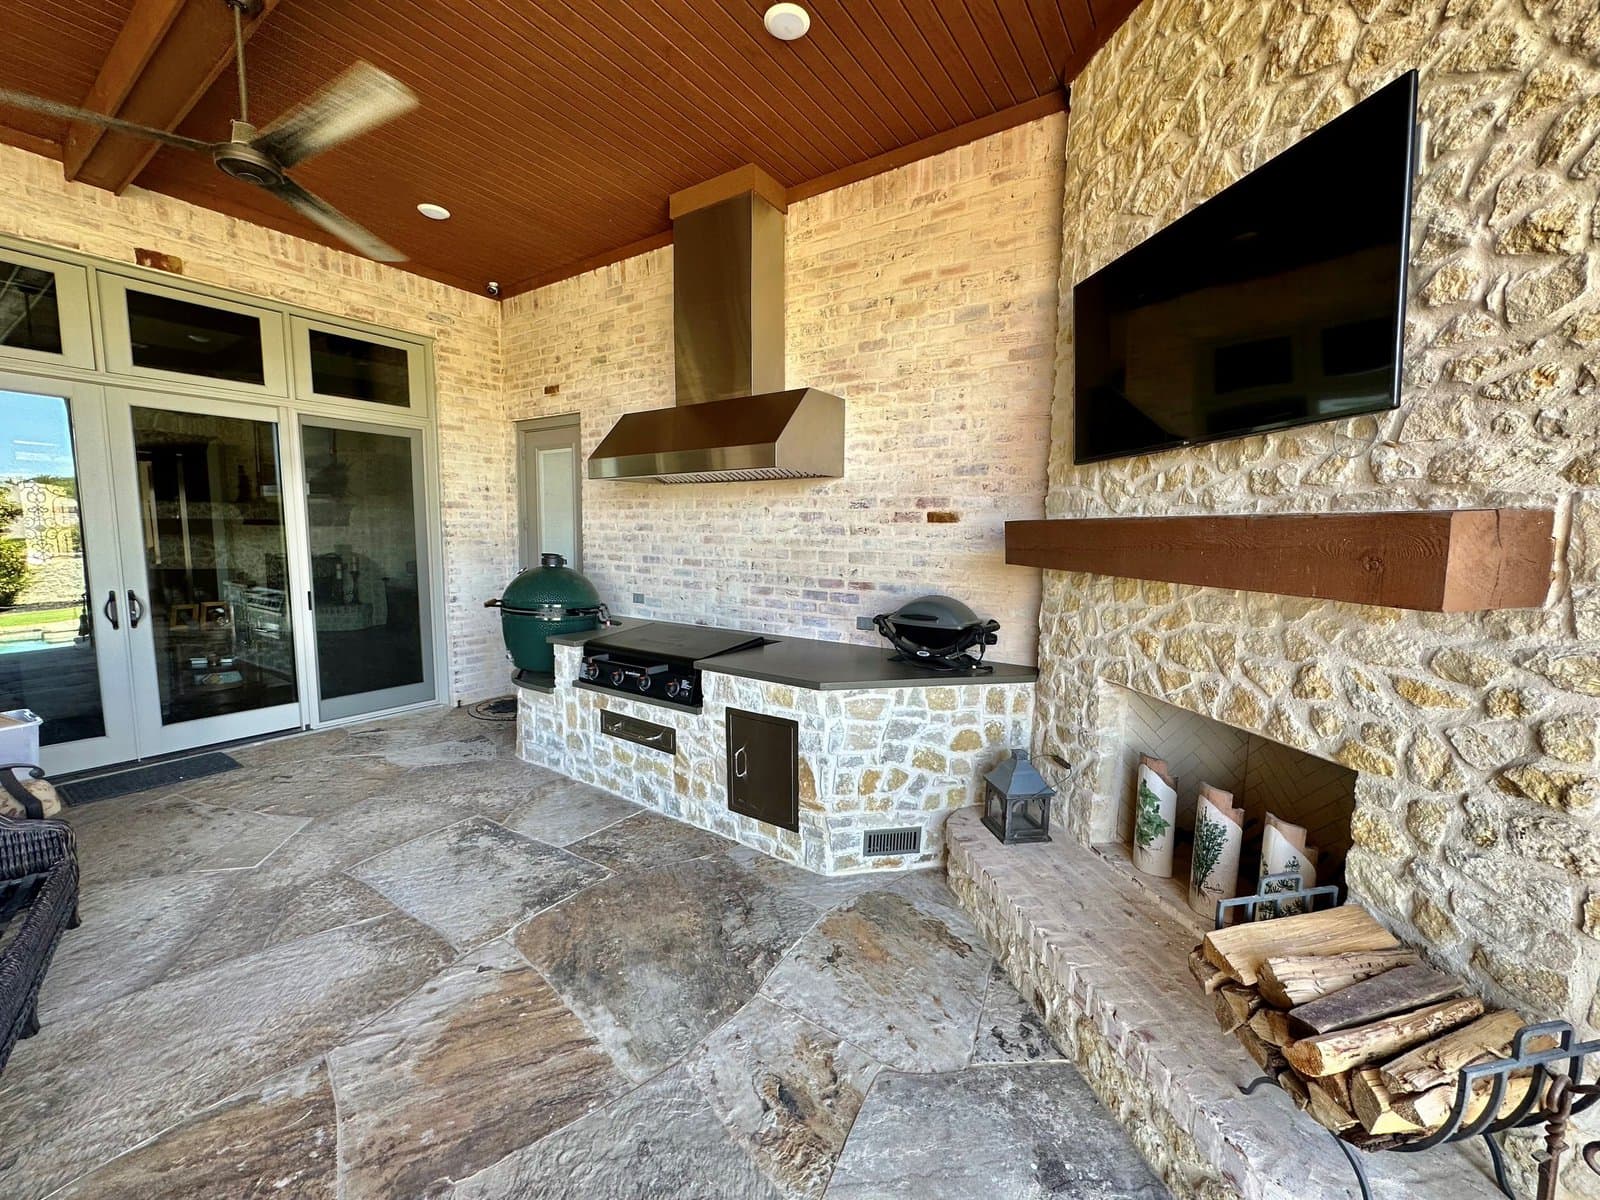 Elegant outdoor kitchen living space in Flower Mound 75022